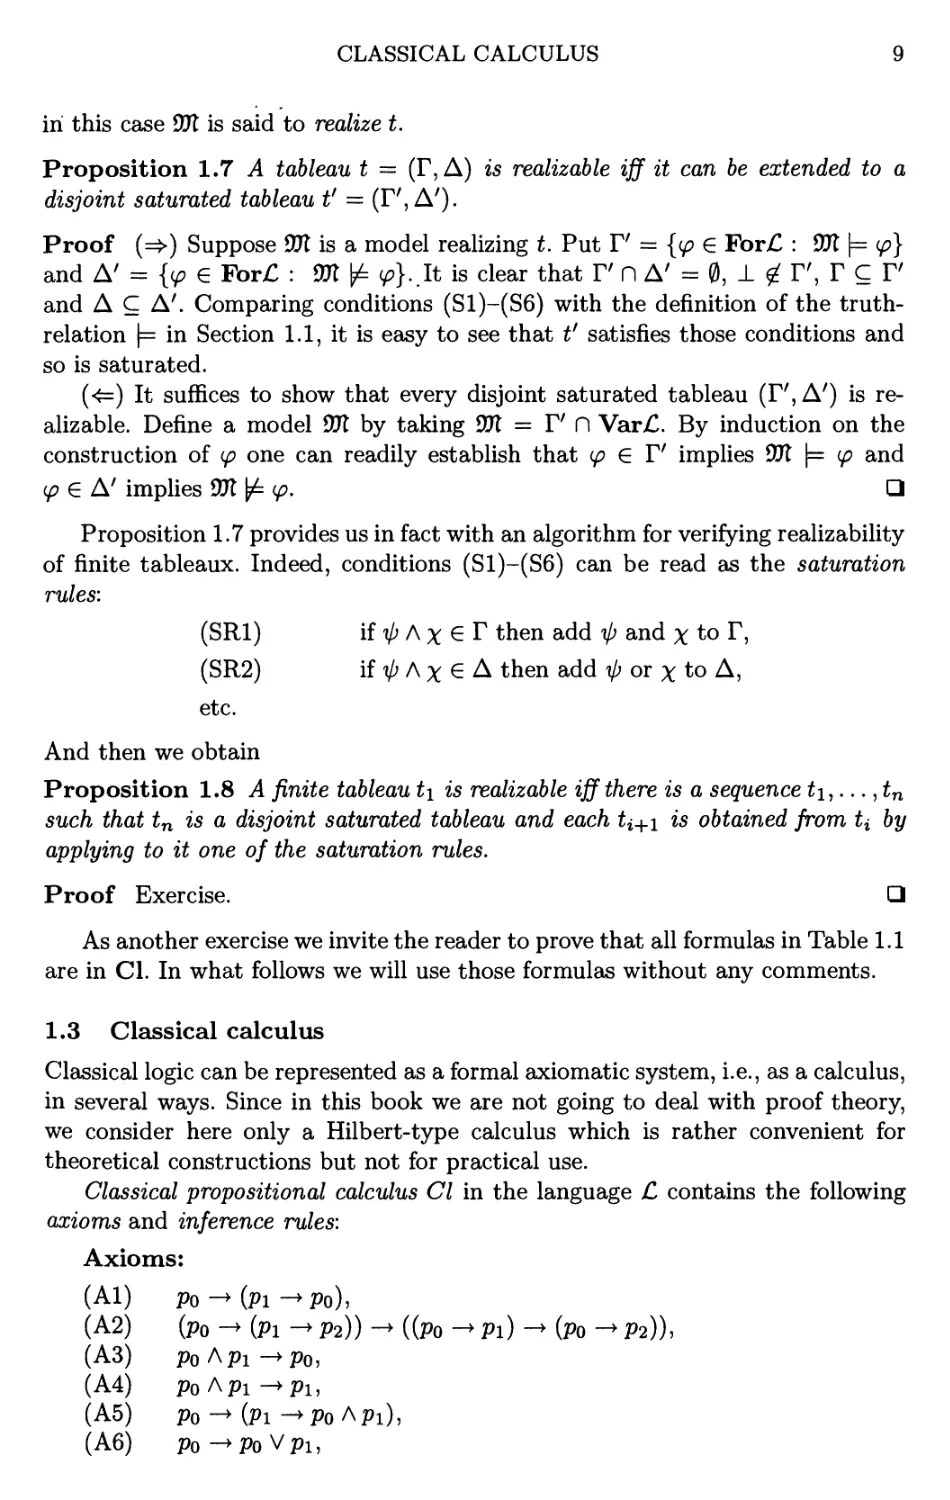 1.3 Classical calculus